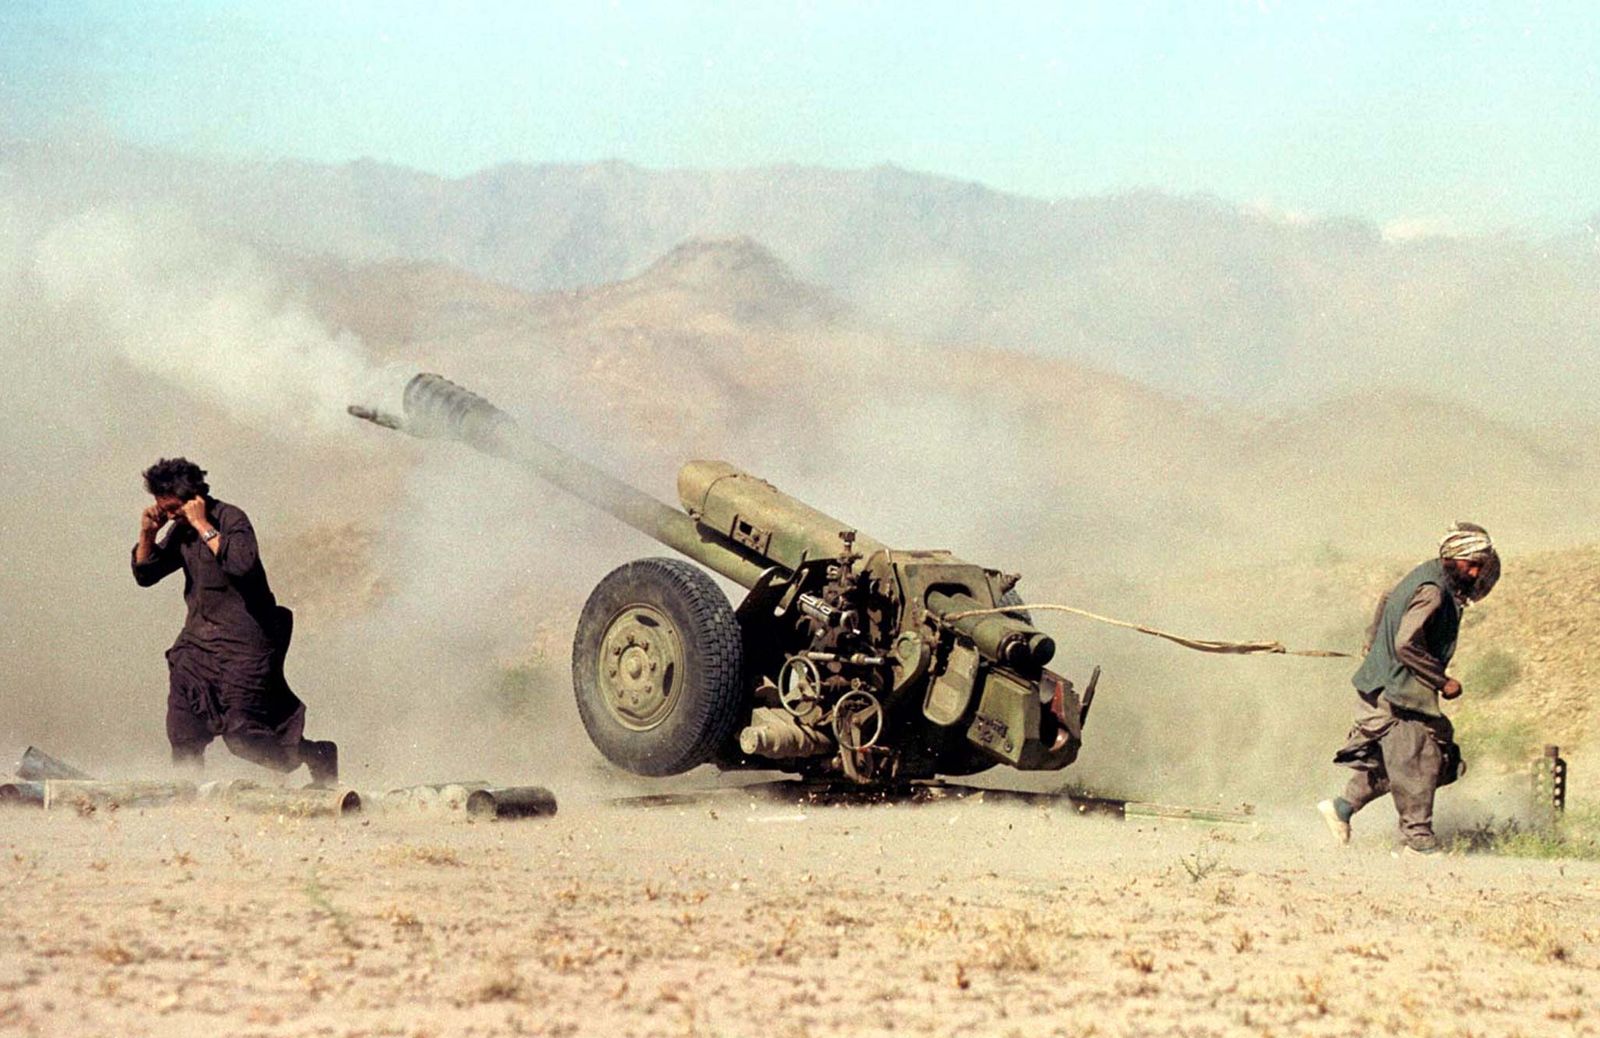 عناصر طالبان تطلق نيران المدفعية على قوات تابعة للحكومة الأفغانية على بعد 20 كيلومتراً شمال العاصمة كابول - 5 أكتوبر 1996 - REUTERS